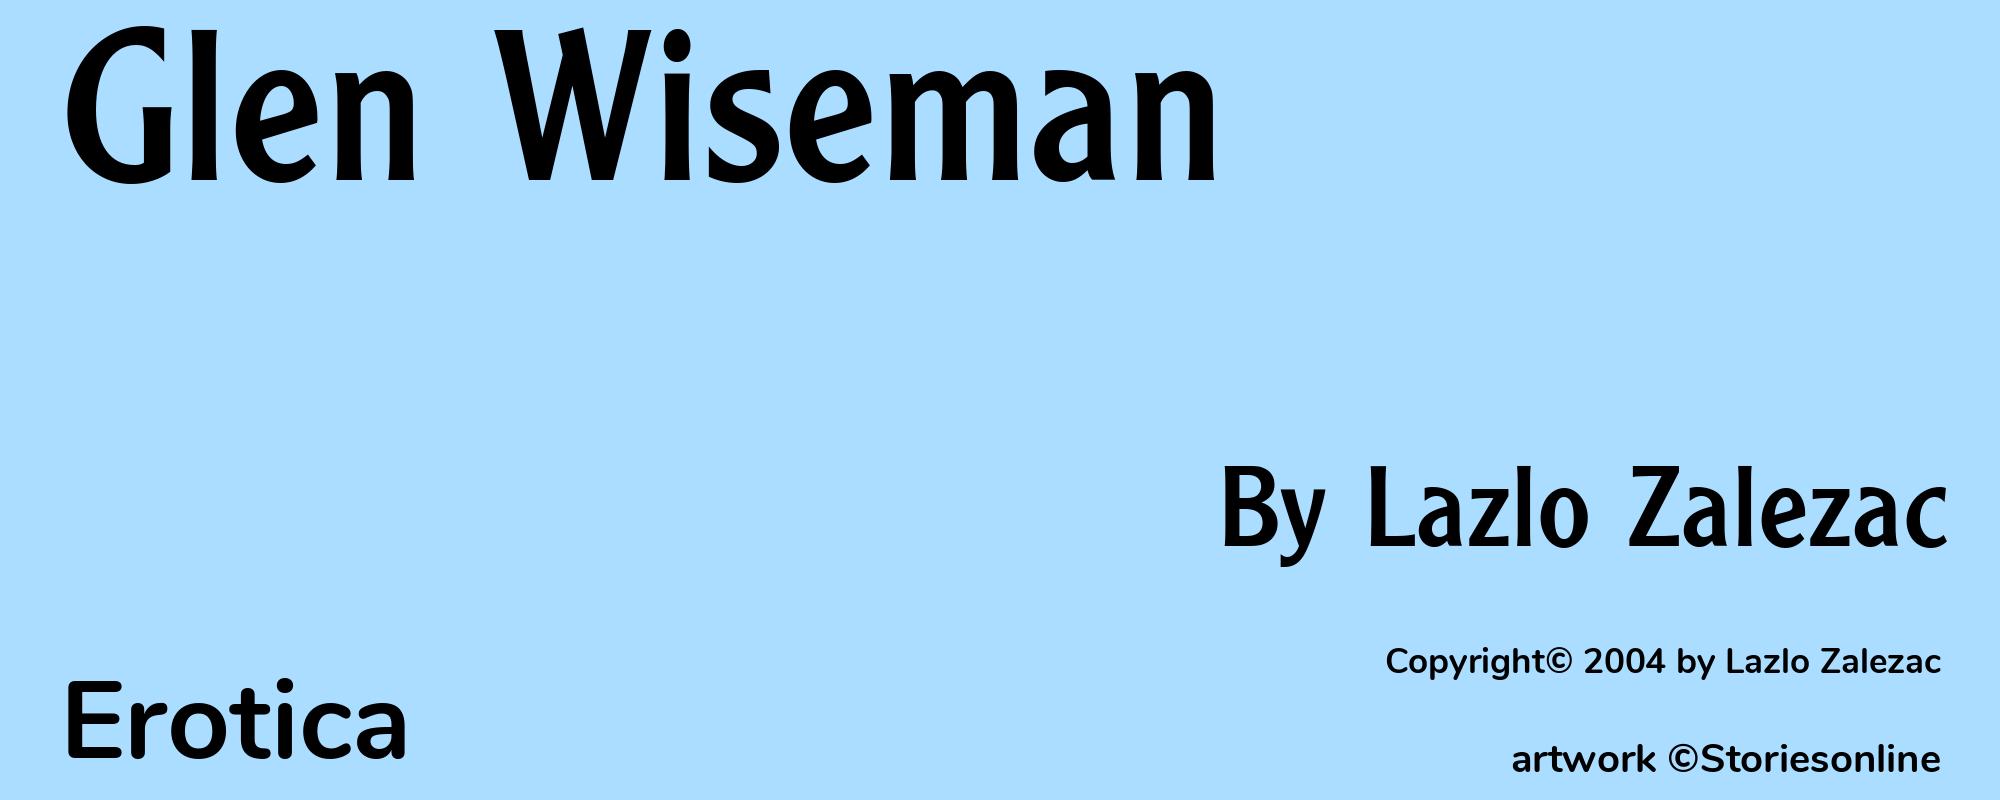 Glen Wiseman - Cover